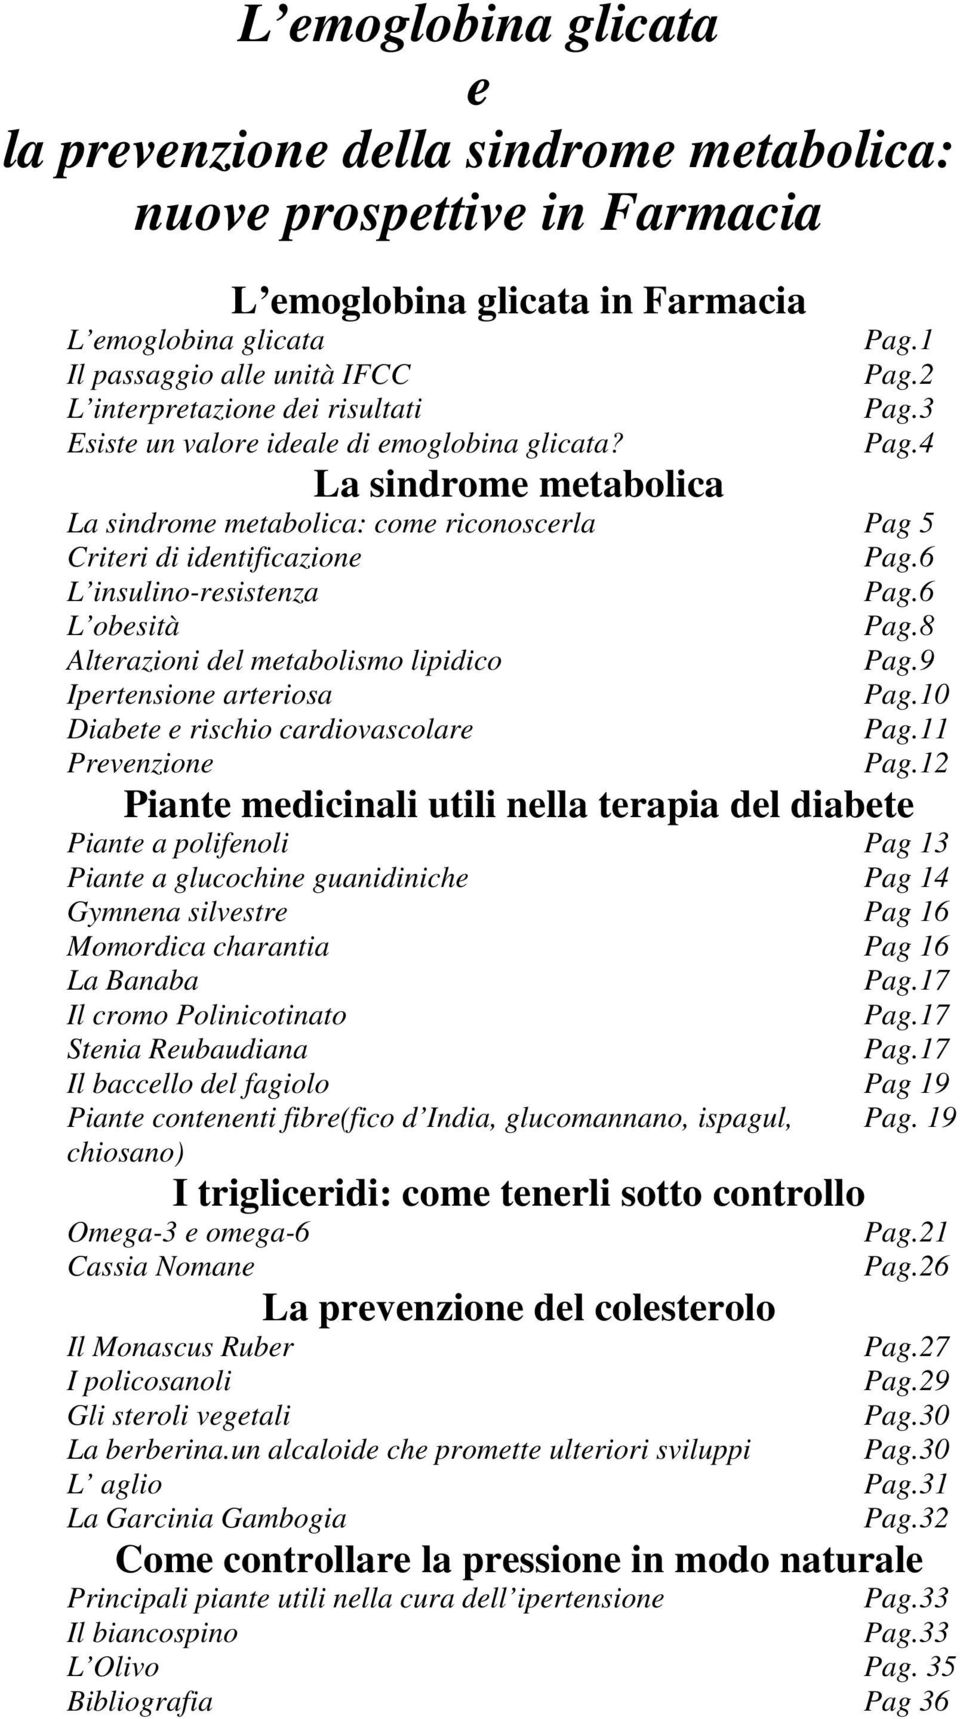 6 L insulino-resistenza Pag.6 L obesità Pag.8 Alterazioni del metabolismo lipidico Pag.9 Ipertensione arteriosa Pag.10 Diabete e rischio cardiovascolare Pag.11 Prevenzione Pag.